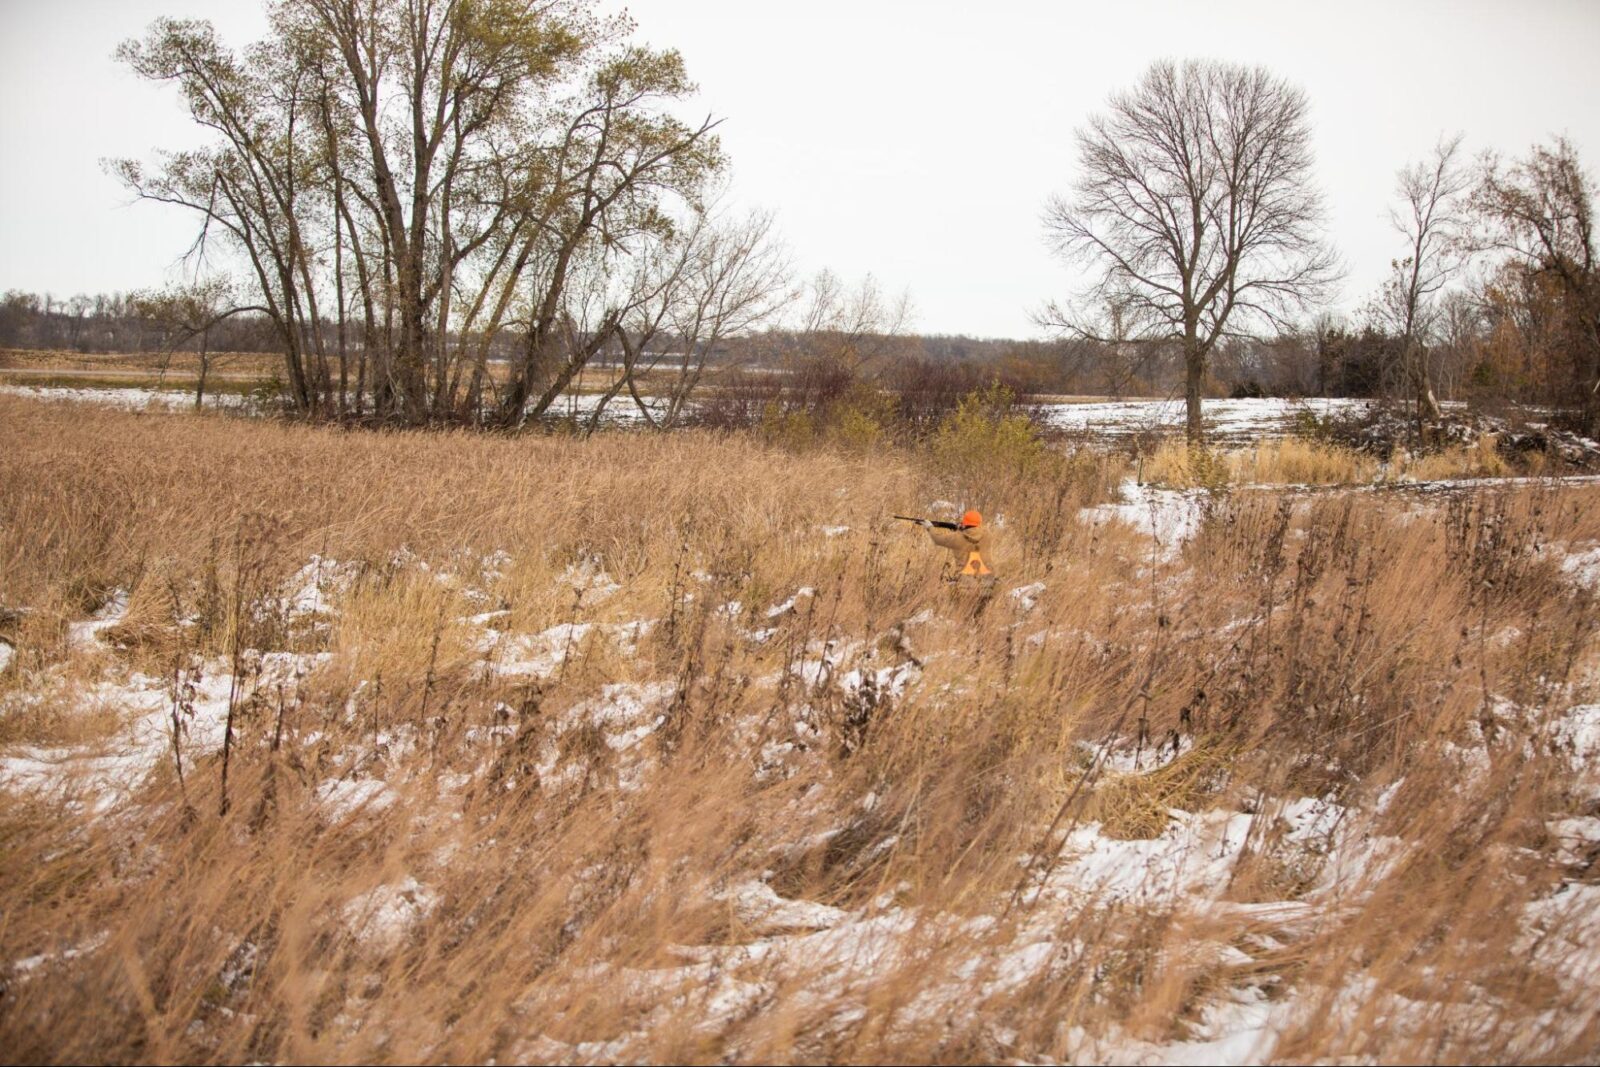 An pheasant hunter raises a shotgun in a field